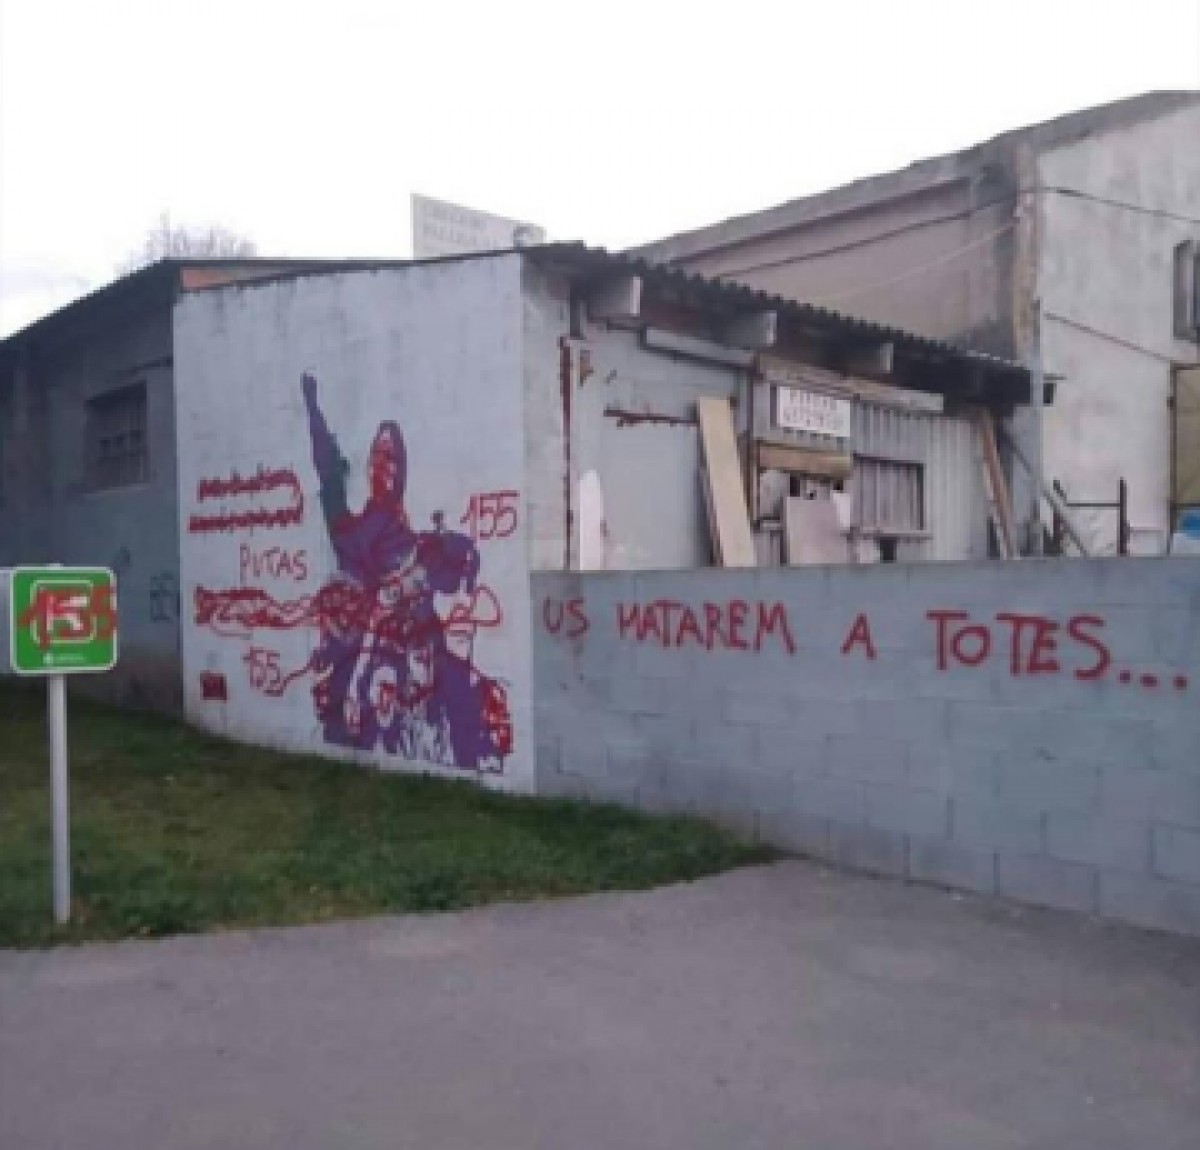 Pintades amenaçadores contra les dones a Llinars del Vallès